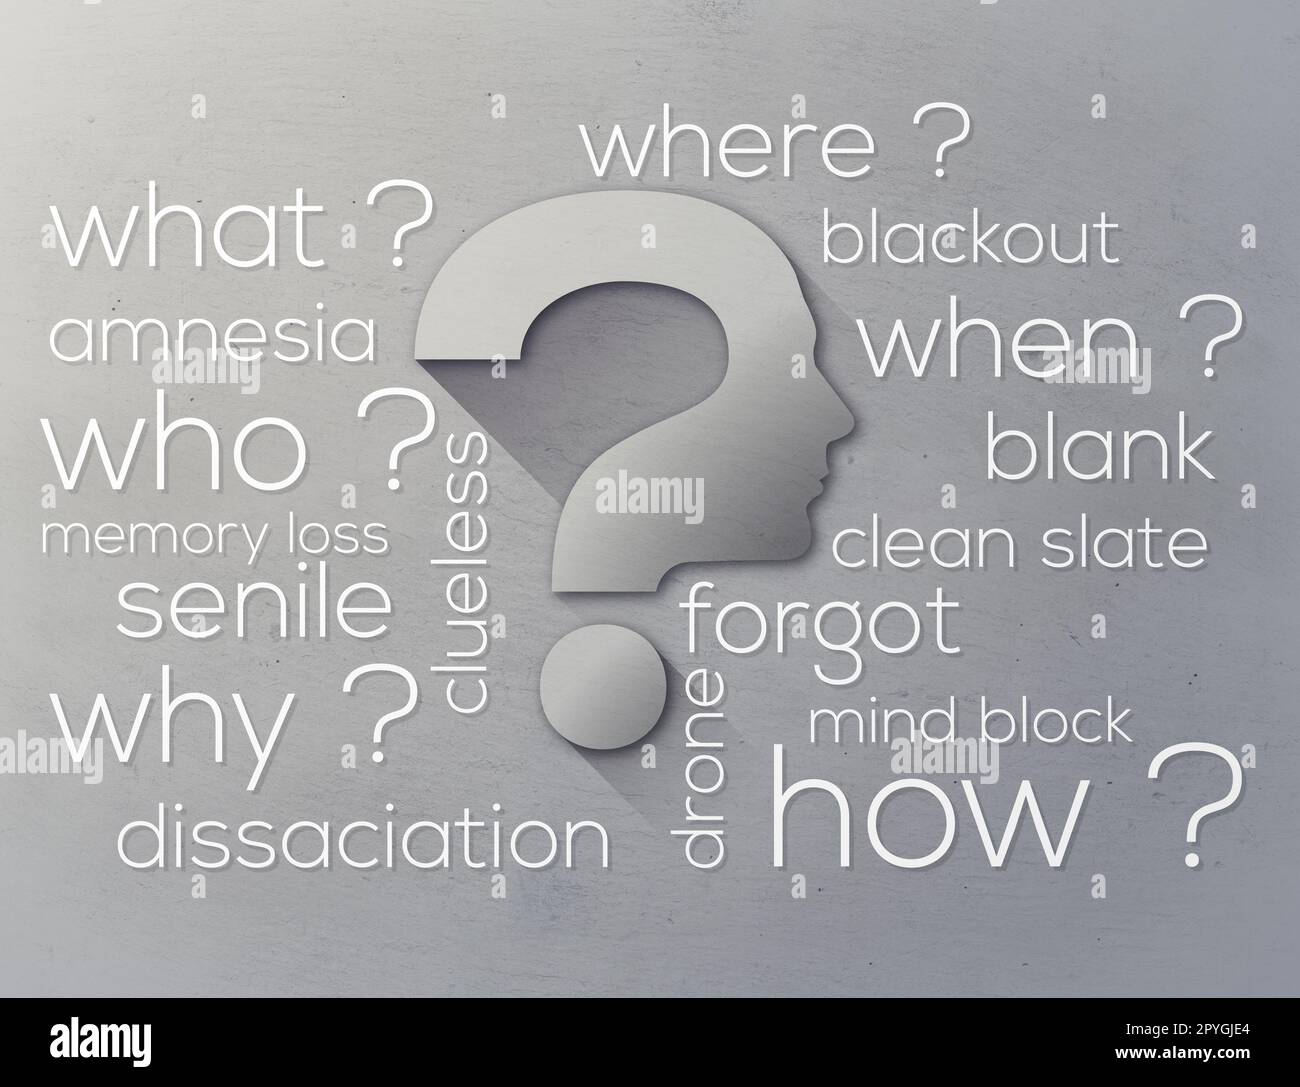 Hinterfragen Sie alles. Eine grafische Darstellung von Wörtern, die sich auf Fragen beziehen. Stockfoto